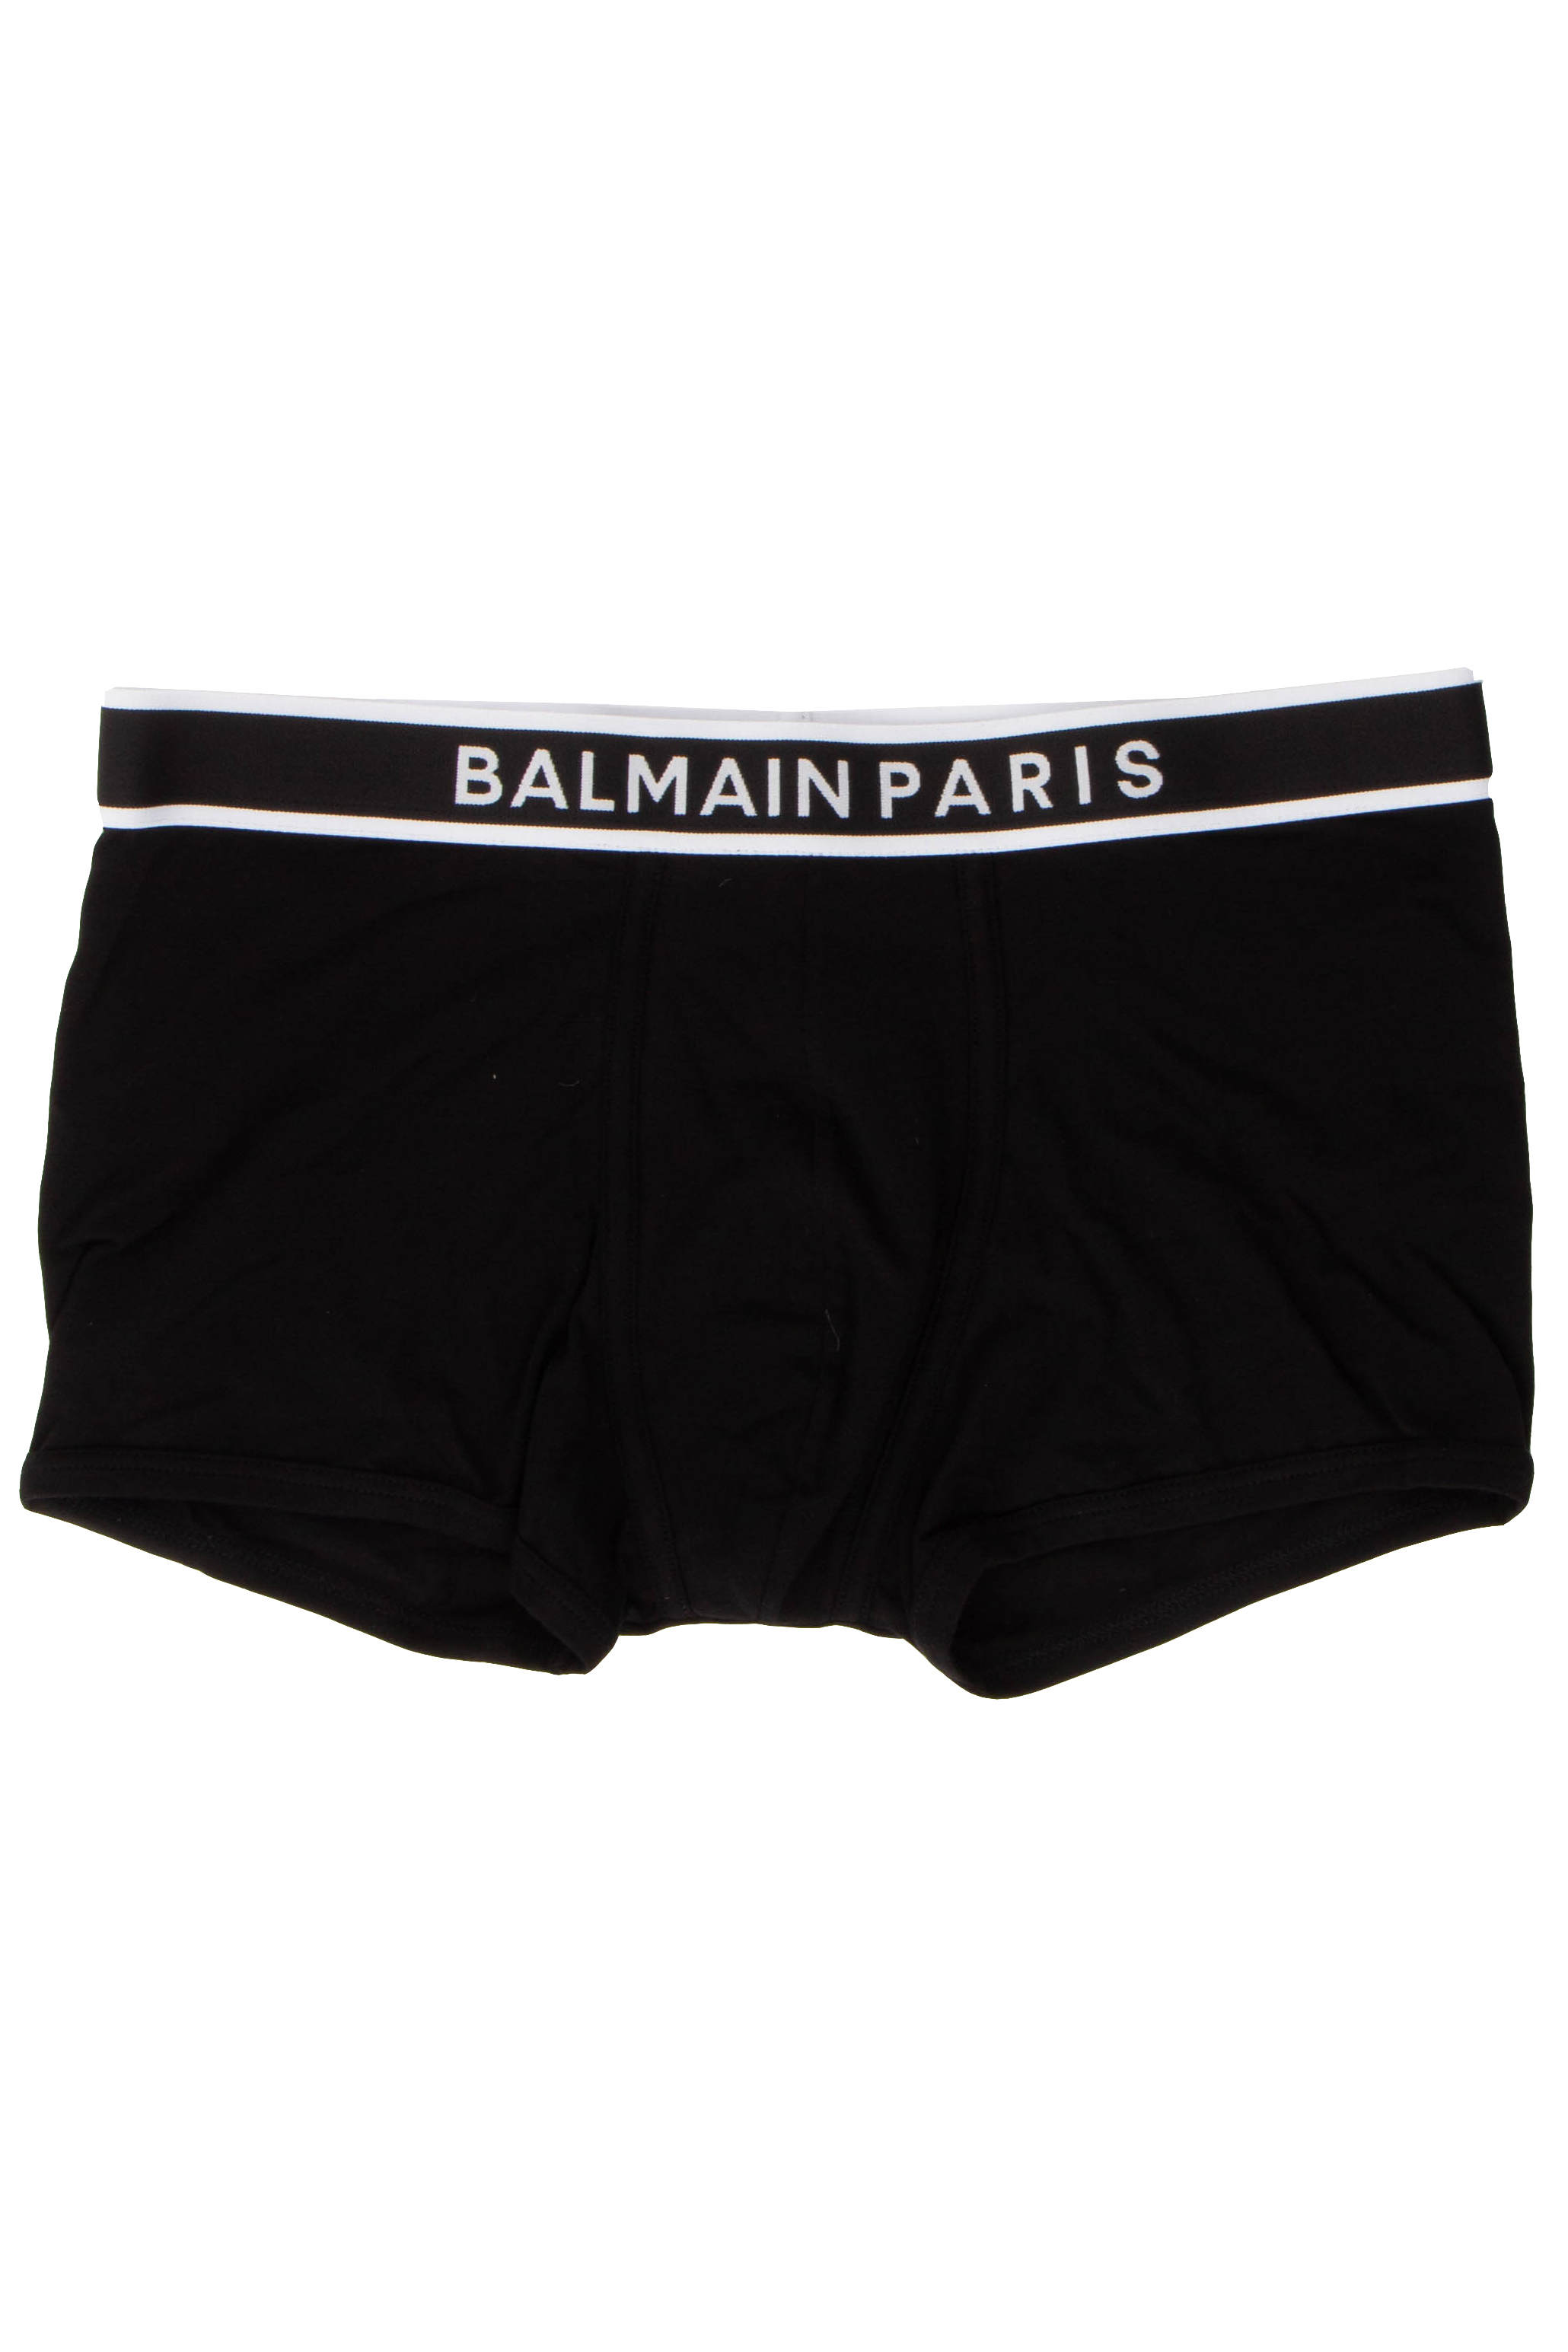 BALMAIN Cotton Jersey Trunk | Boxershorts | Underwear | Underwear ...